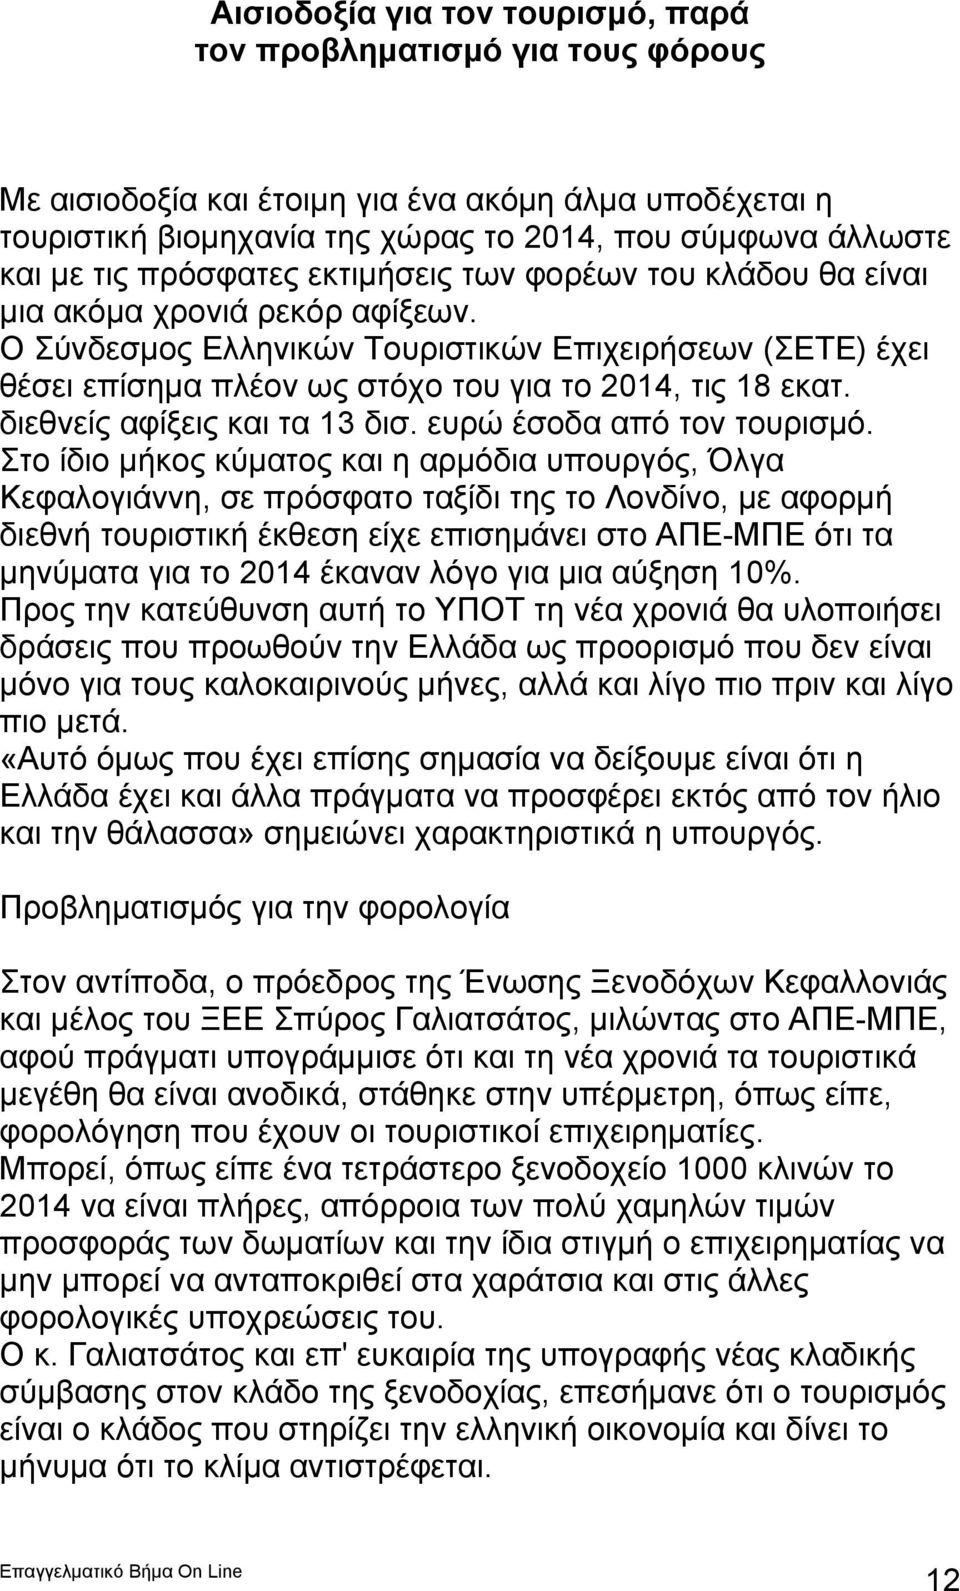 Ο Σύνδεσμος Ελληνικών Τουριστικών Επιχειρήσεων (ΣΕΤΕ) έχει θέσει επίσημα πλέον ως στόχο του για το 2014, τις 18 εκατ. διεθνείς αφίξεις και τα 13 δισ. ευρώ έσοδα από τον τουρισμό.